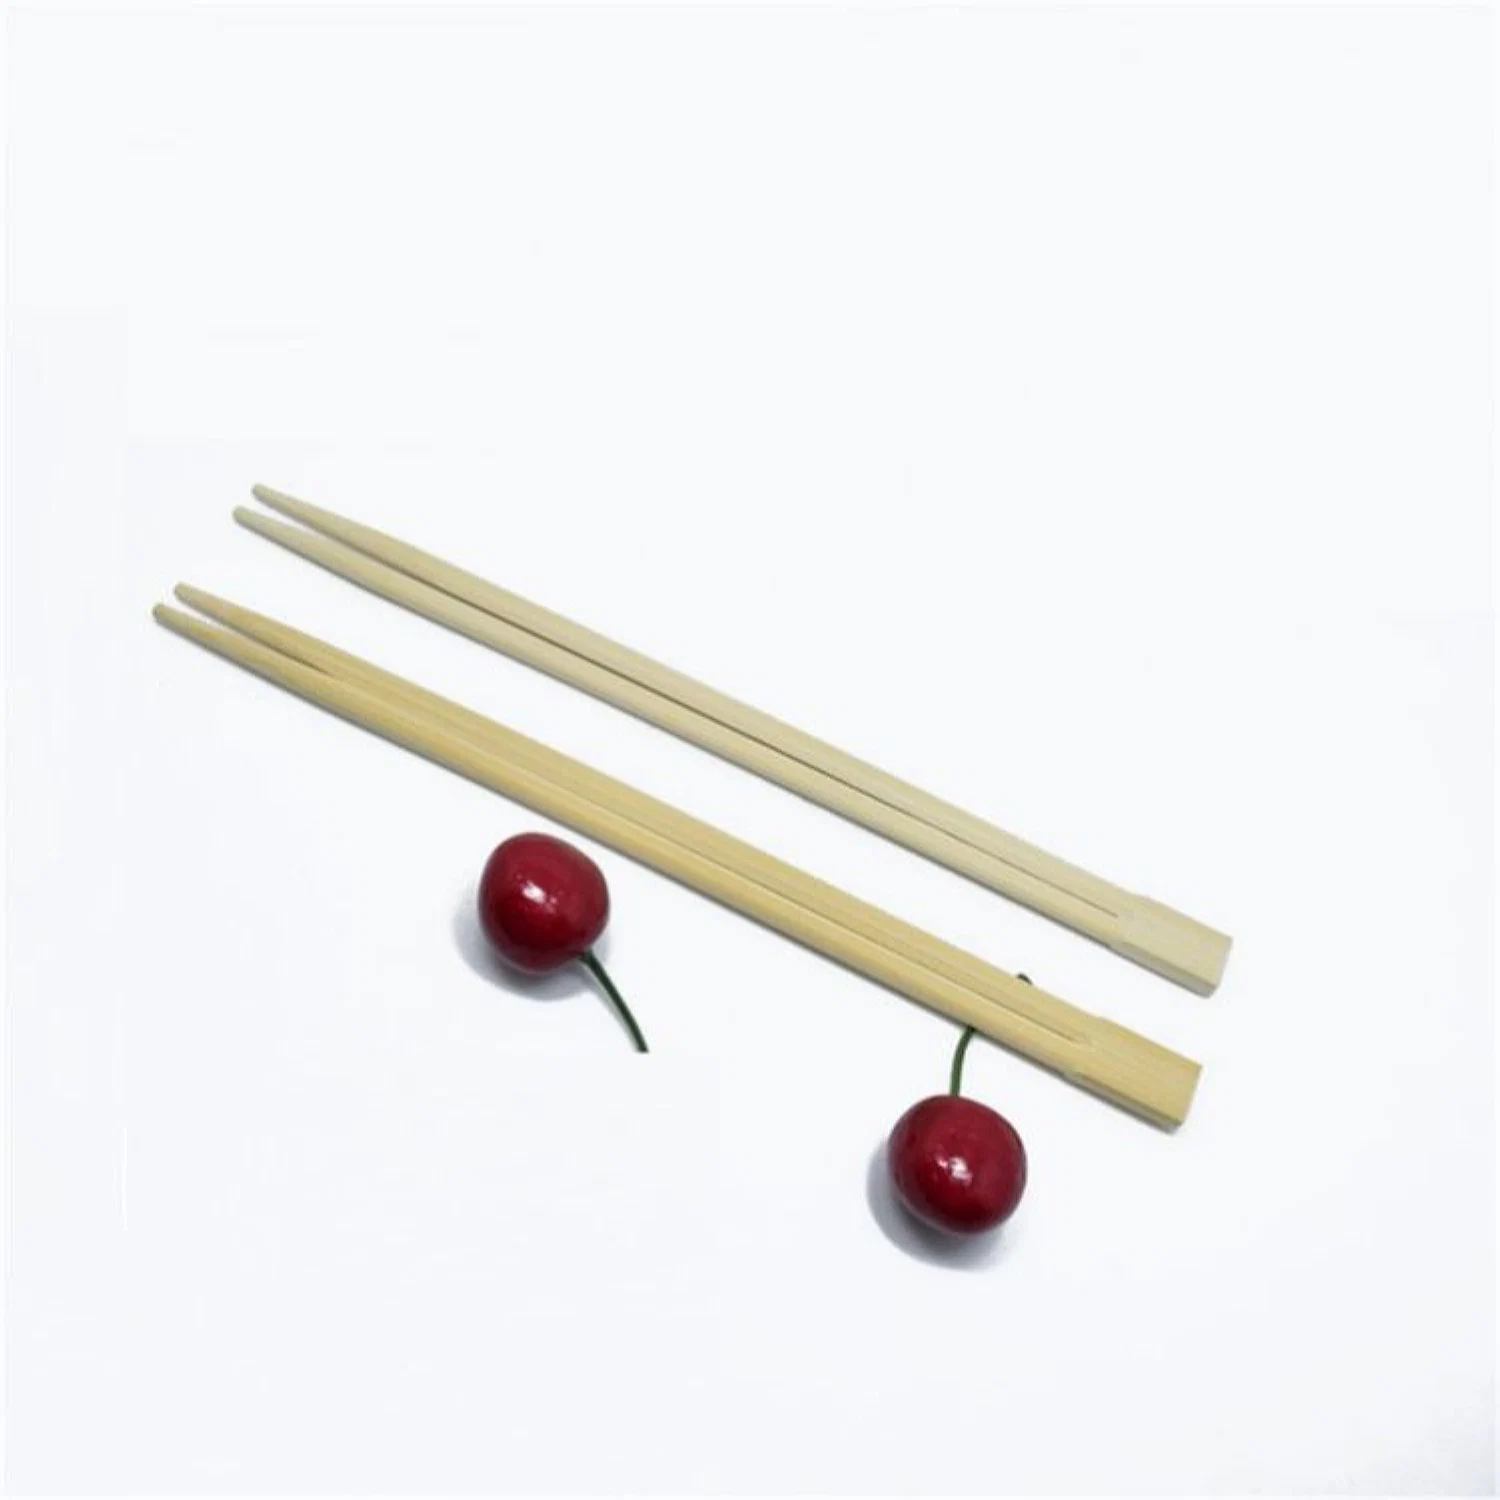 OEM aceptado Mayorista/Proveedors Occidental Rendimiento de alta calidad/alto costo única Chopsticks Embalaje Bambú Palillos desechables dobles con logotipo